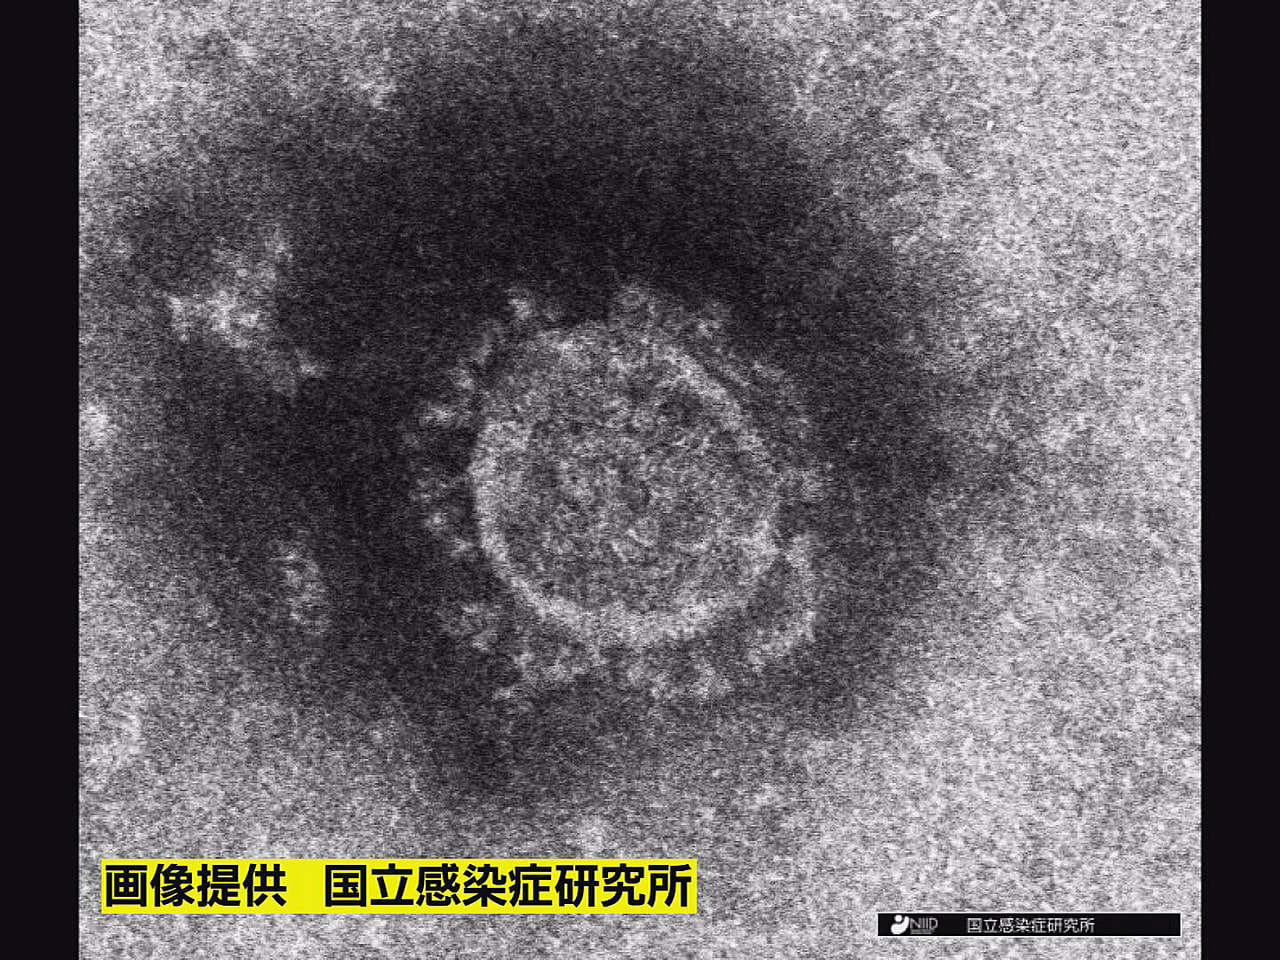 岐阜県は３日、新型コロナウイルスの新規感染者が４７８人確認されたと発表しました。...